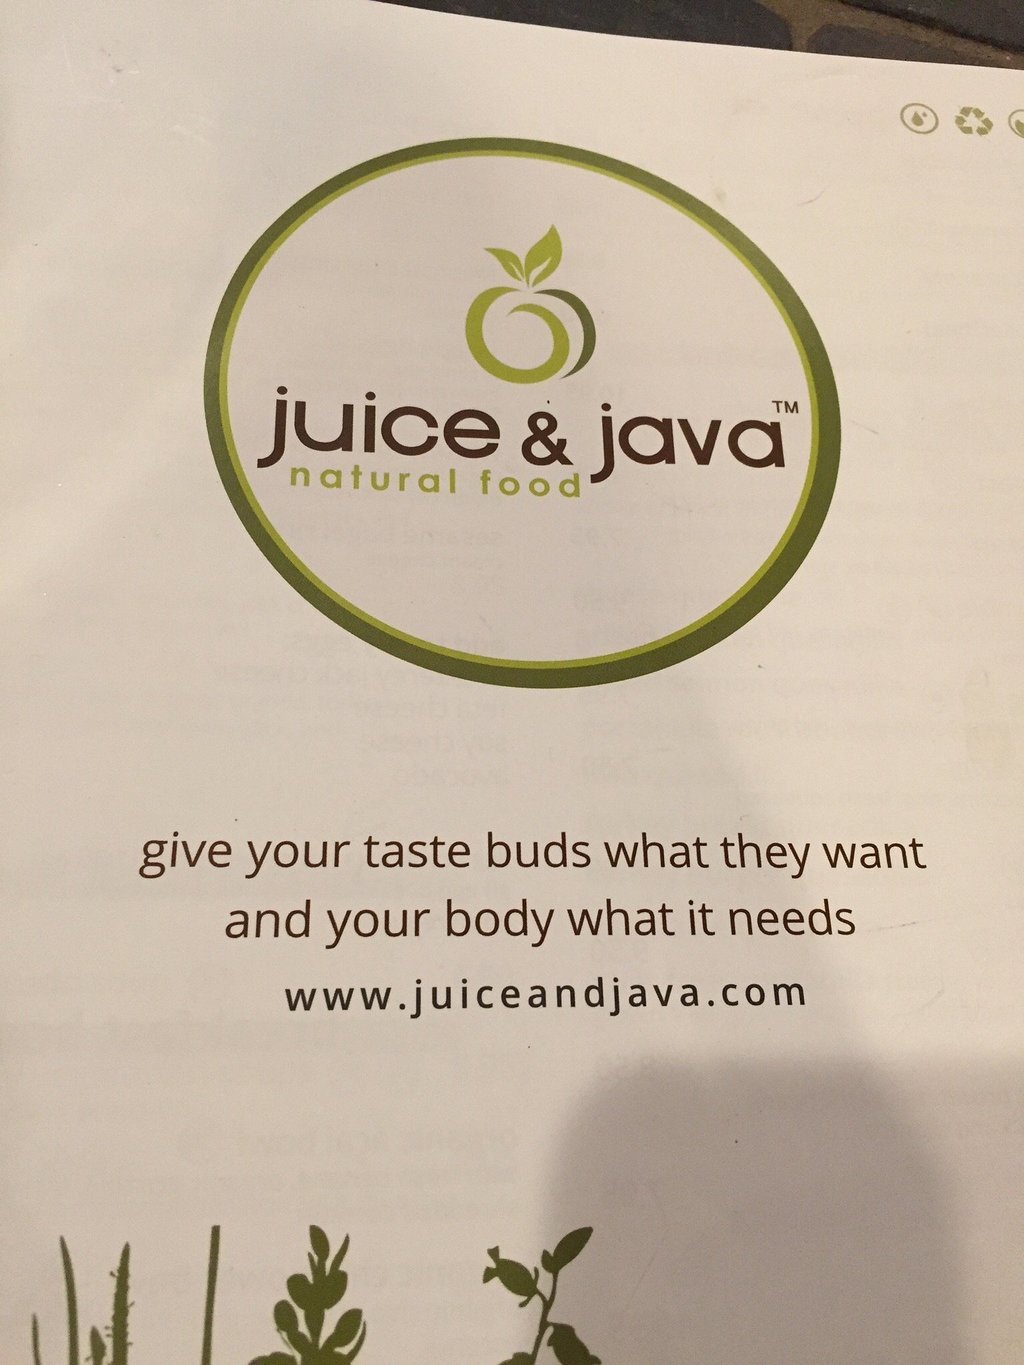 Juice & Java Inc